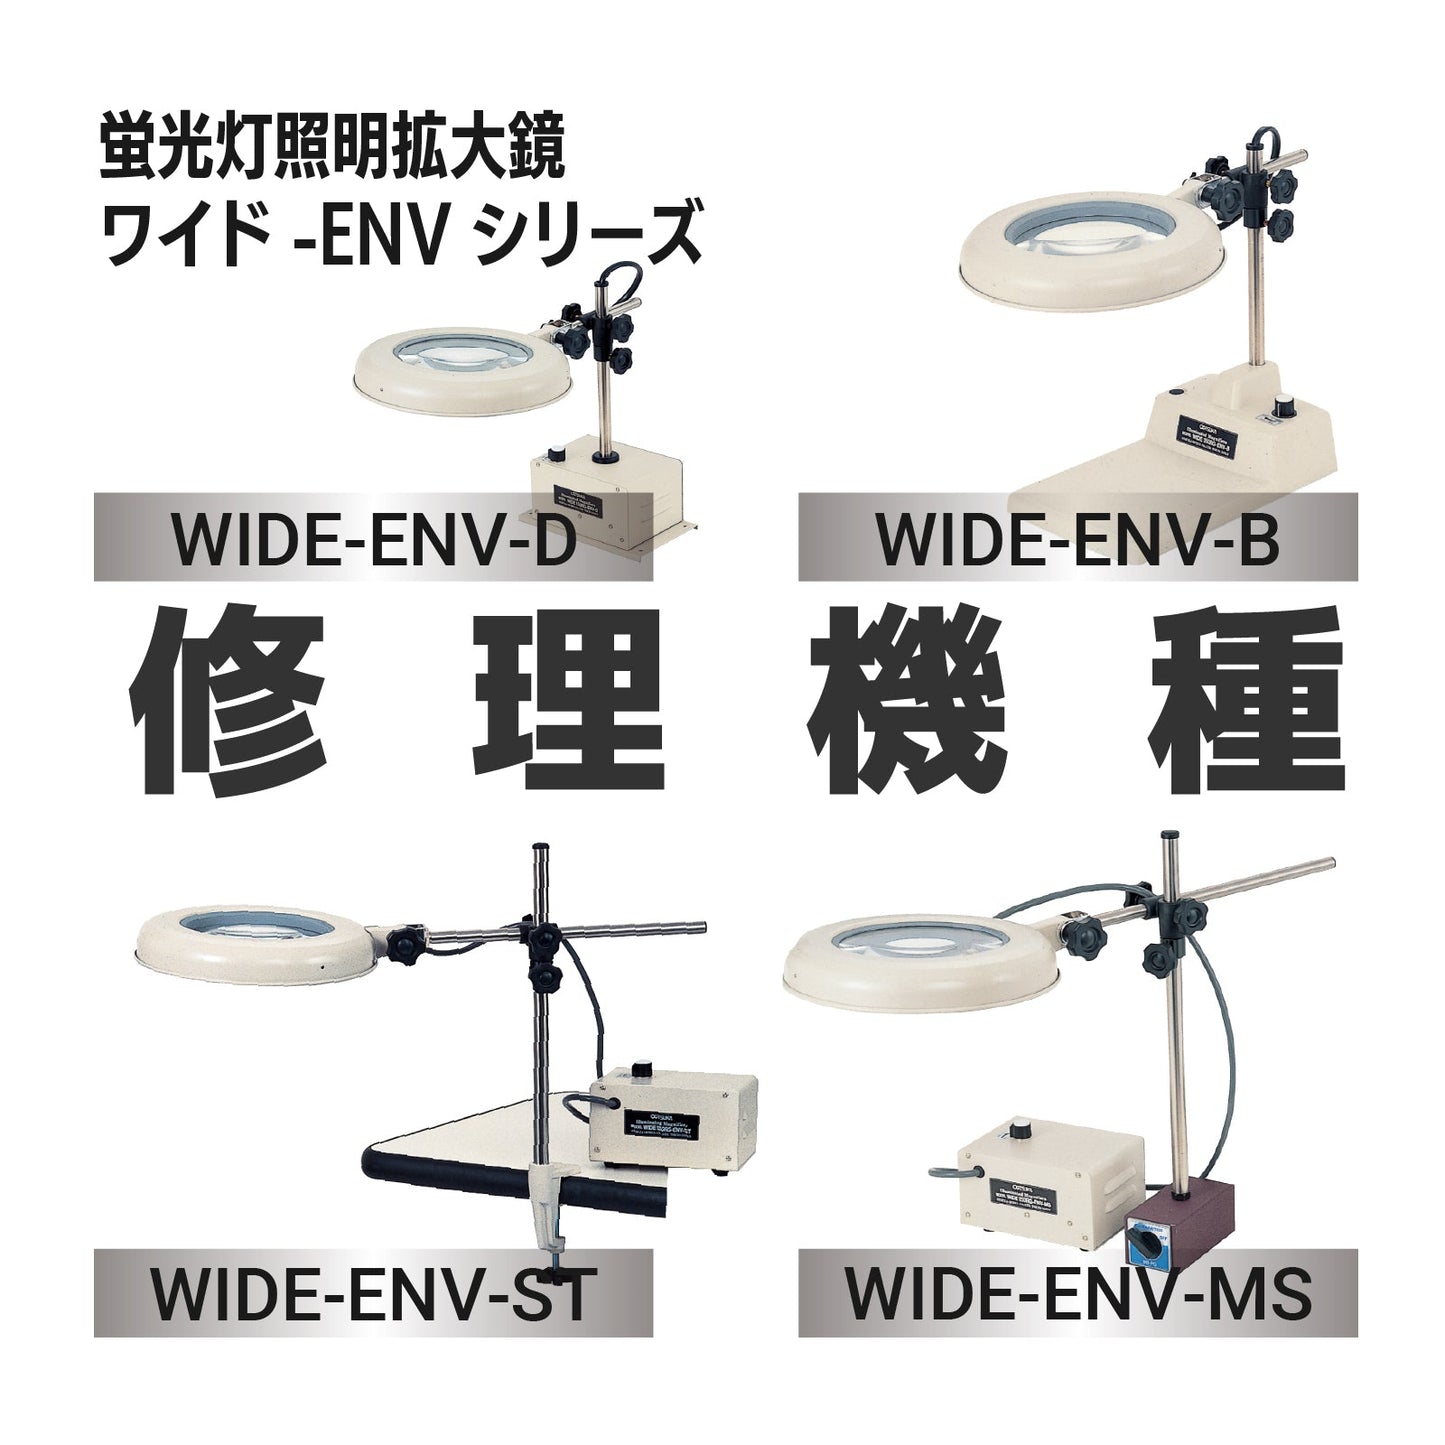 Wide-ENV series: Wide-ENV-B, D, MS, ST